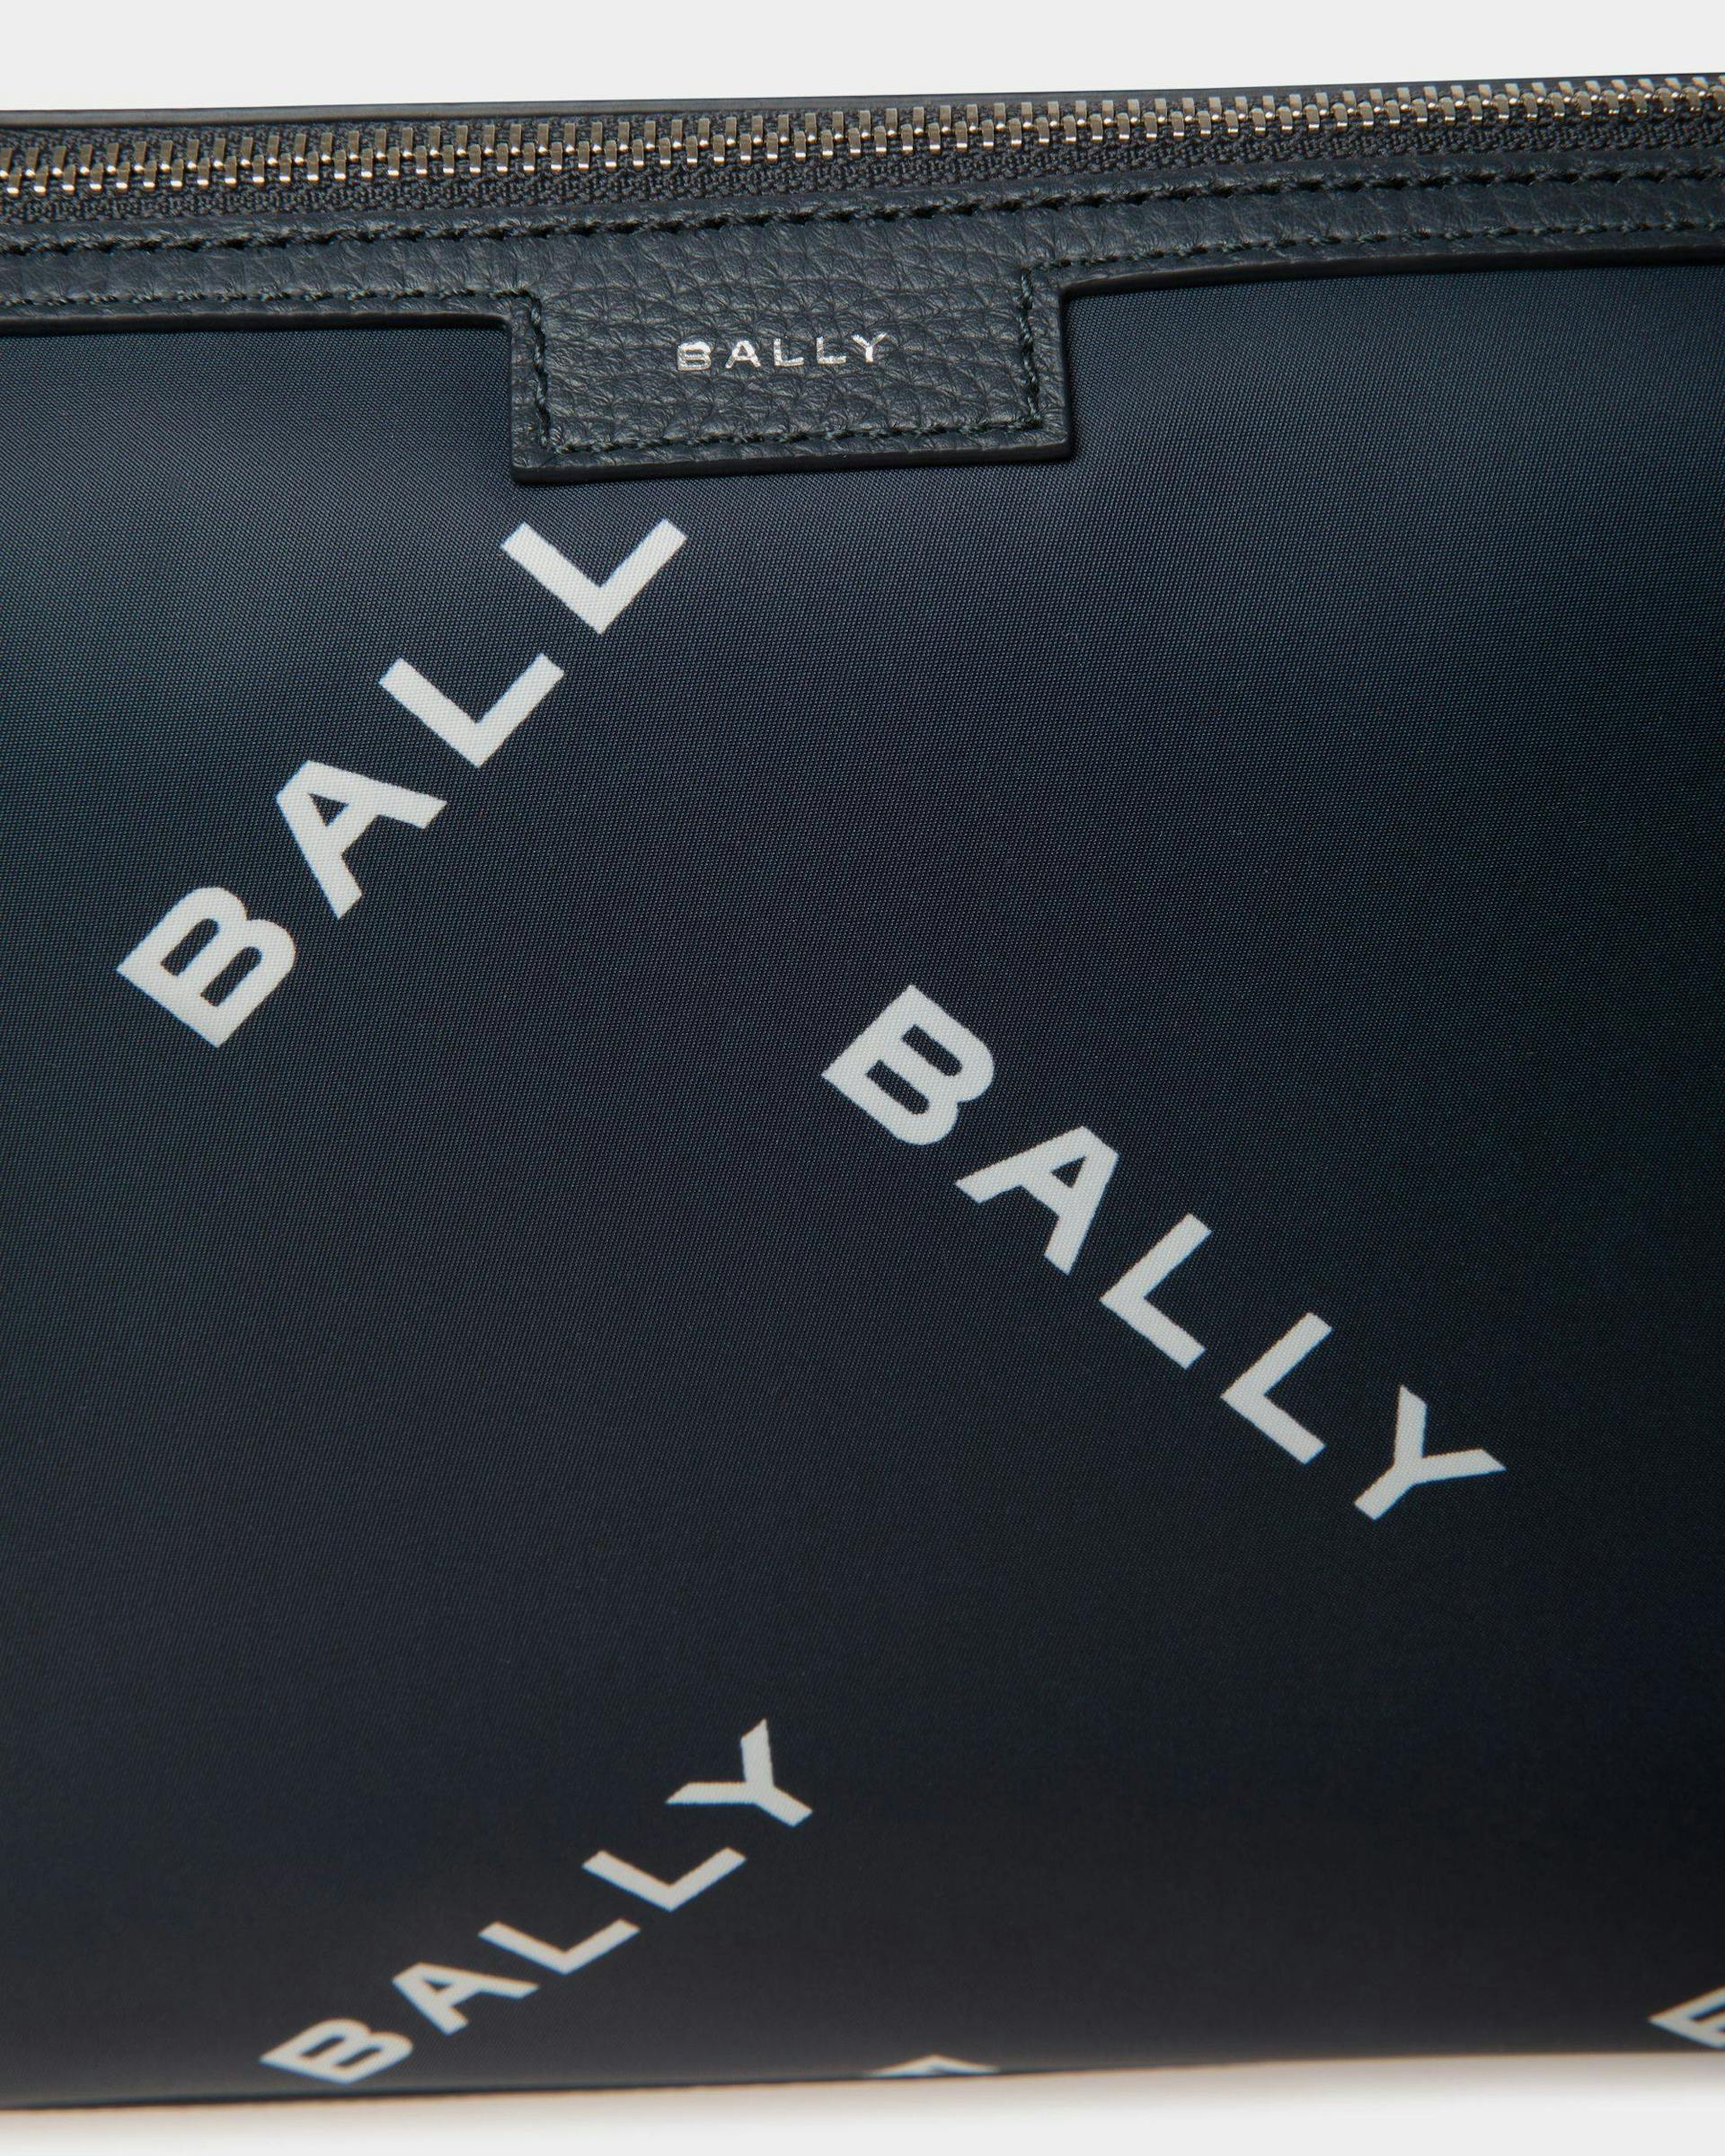 Men's Code Small Messenger Bag in Blue Printed Nylon | Bally | Still Life Detail